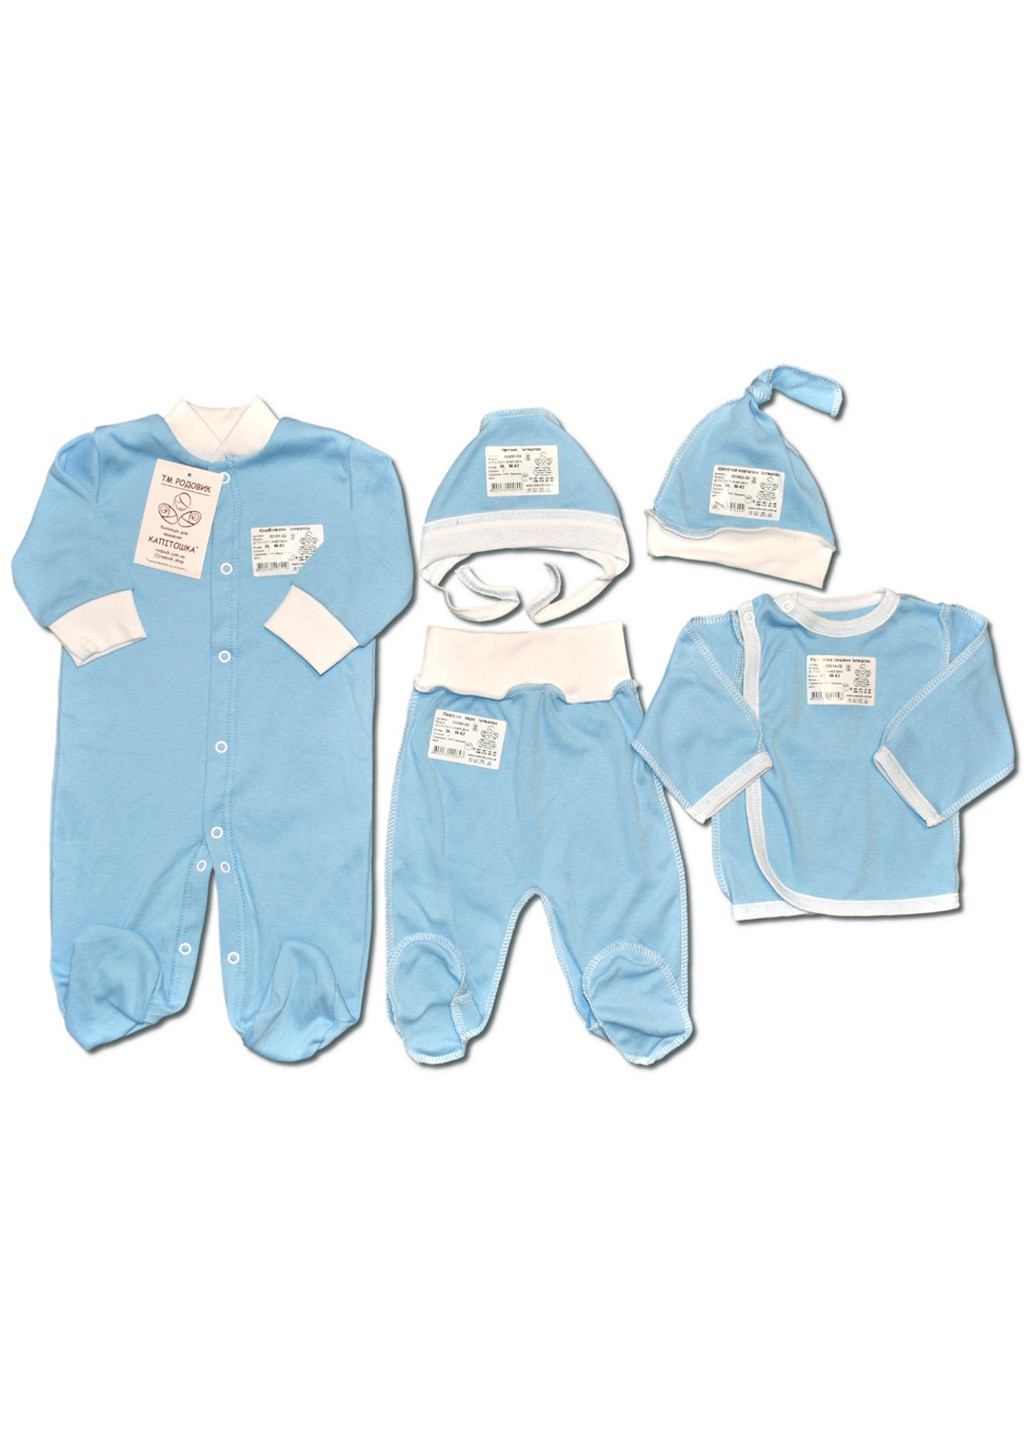 Голубой демисезонный комплект для новорожденных №7 (5 предметов) тм коллекция капитошка голубой Родовик комплект 05-БХГ